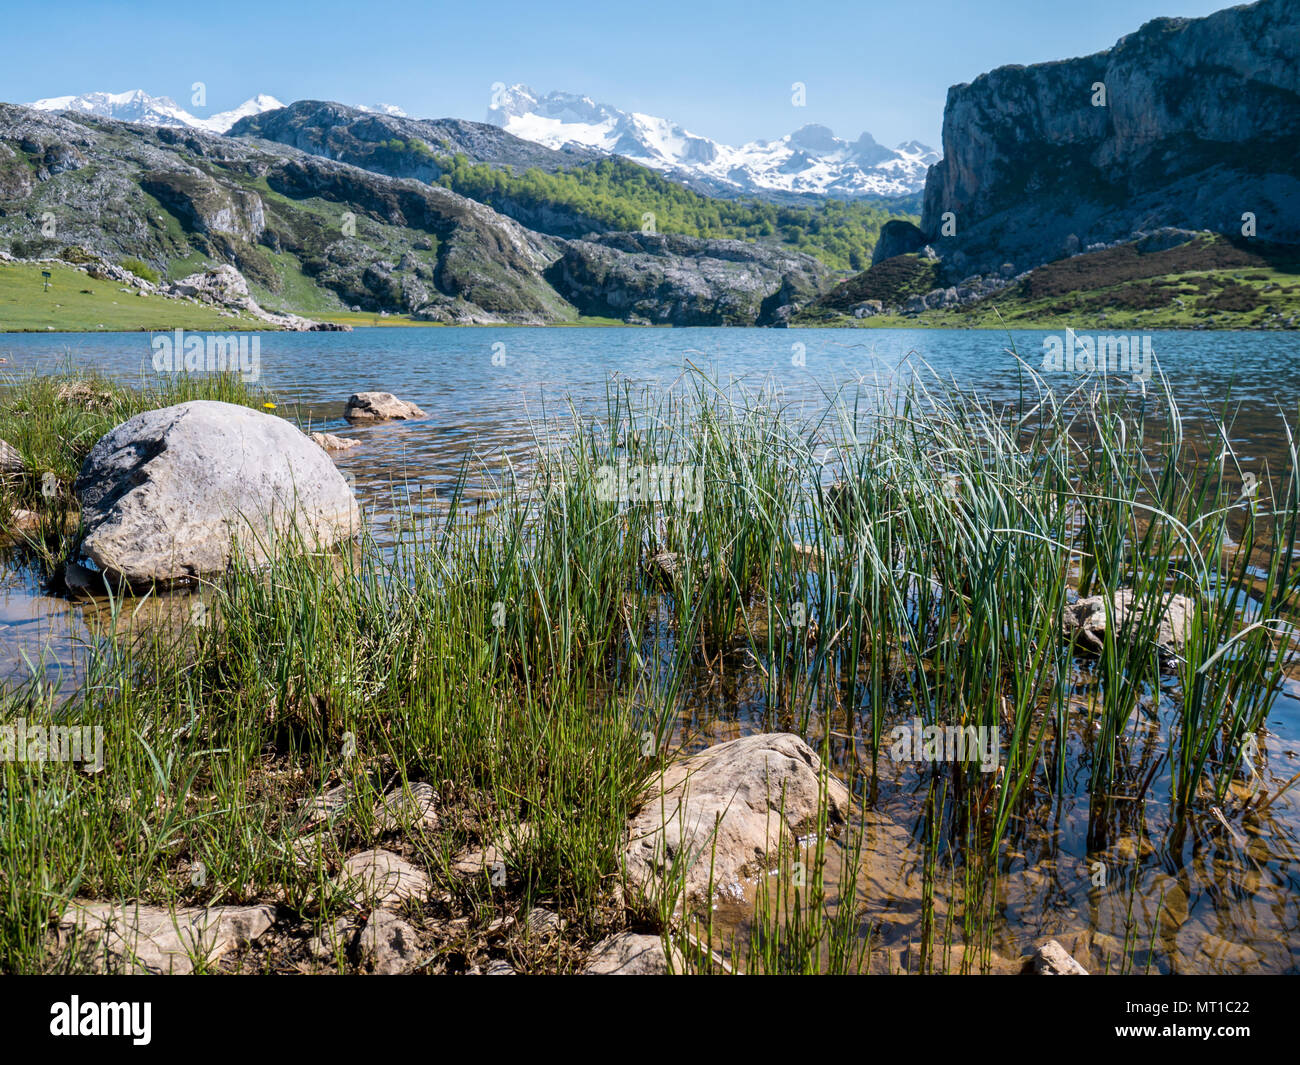 Alpine Mountain Lake Landschaft. Ercina See im Nationalpark Picos de Europa, Spanien, Asturien. Schnee auf den Gipfeln. Stockfoto